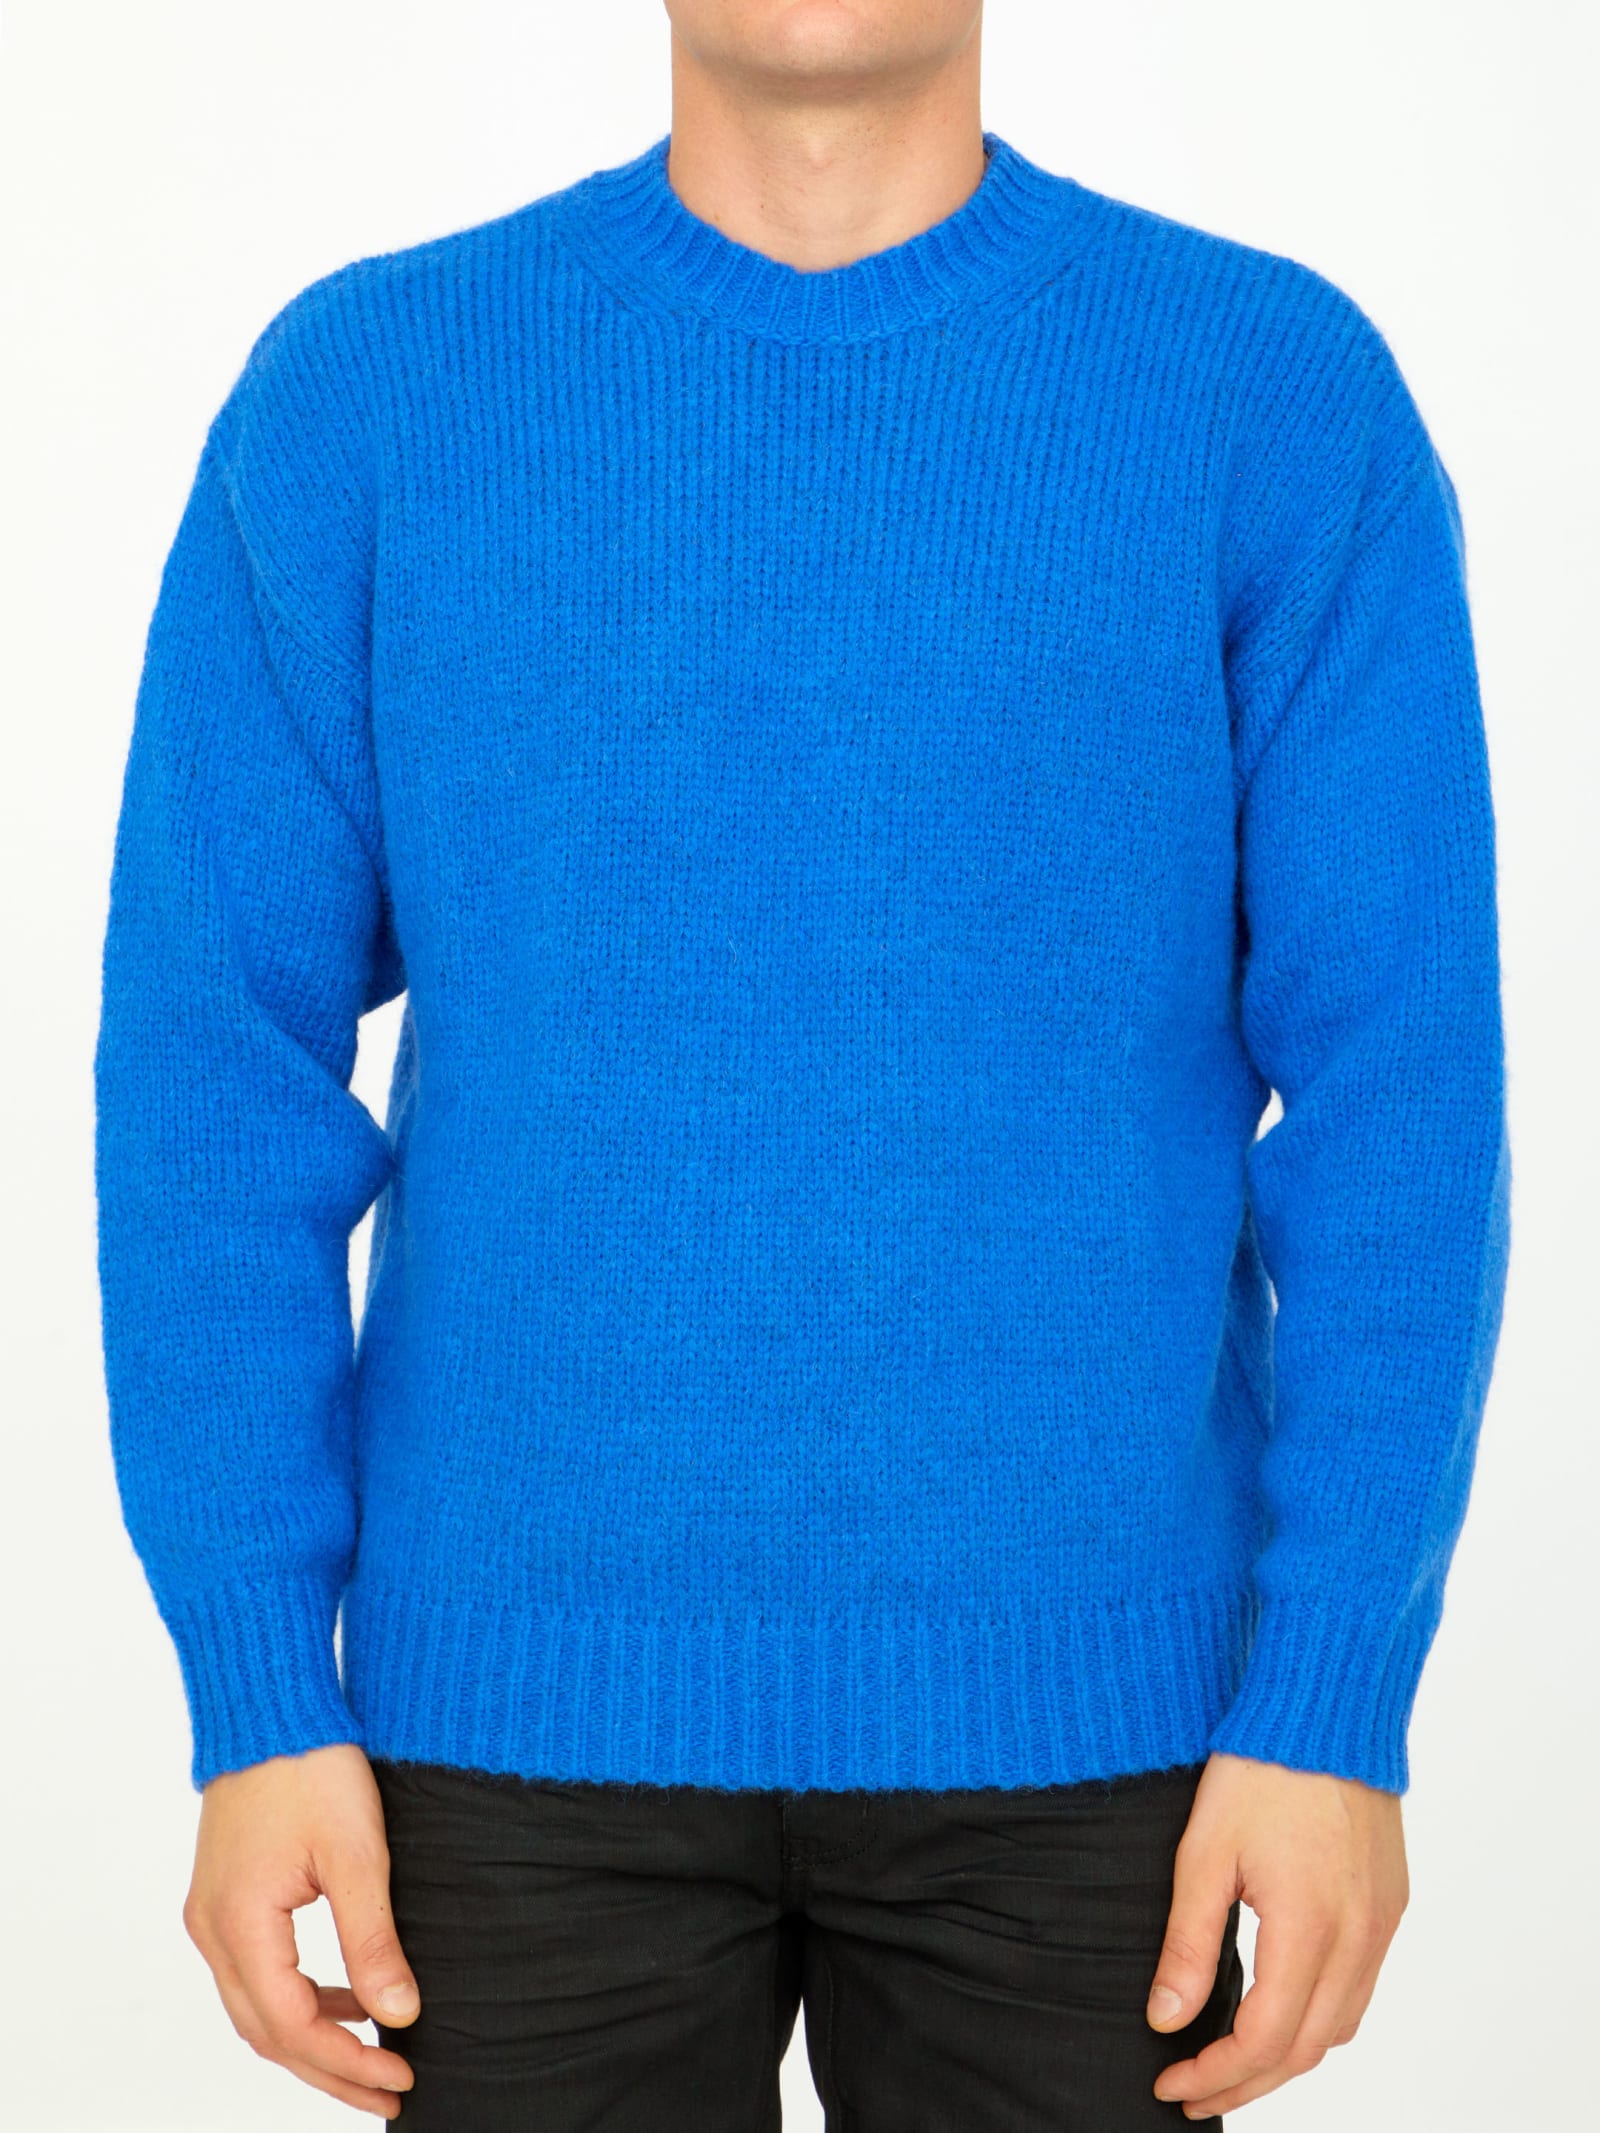 Roberto Collina Bluette Alpaca Sweater